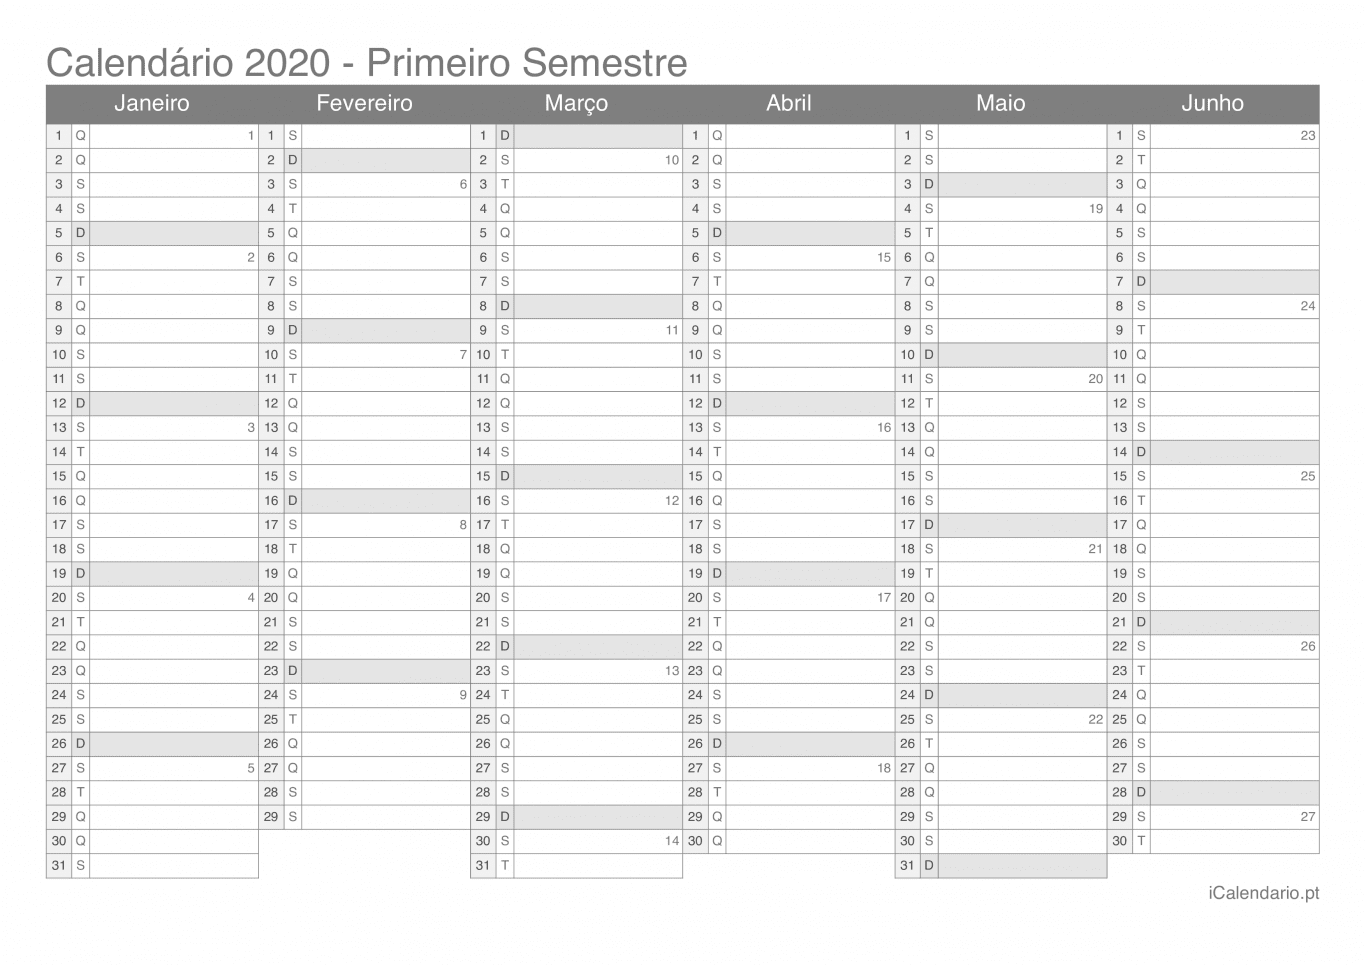 Calendário por semestre com números da semana 2020